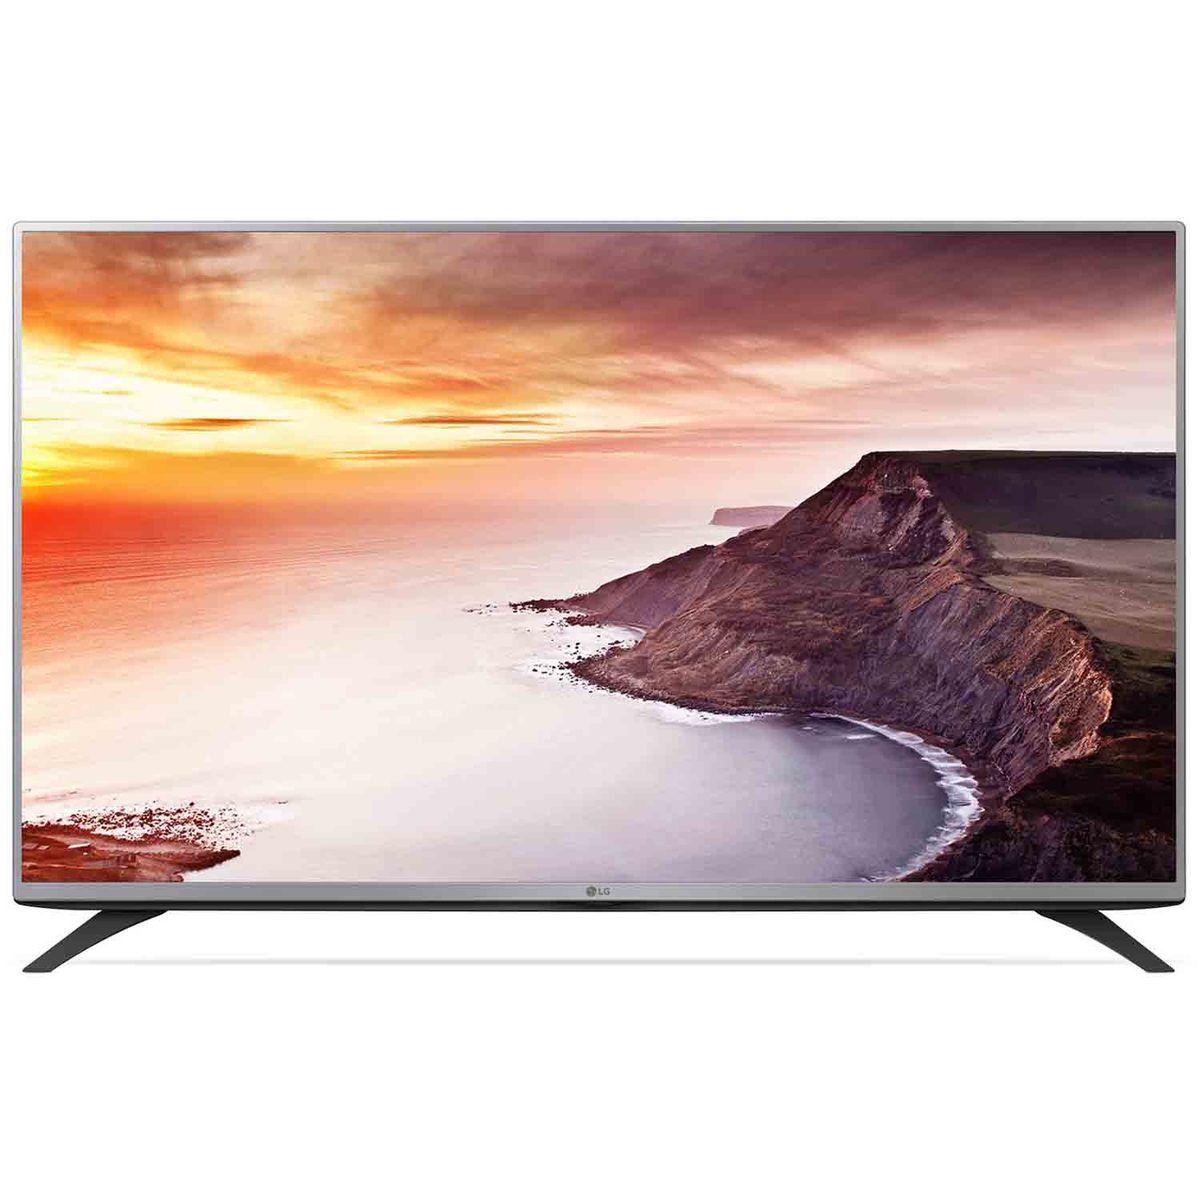 LG Full HD LED TV 43LF540T 43inch